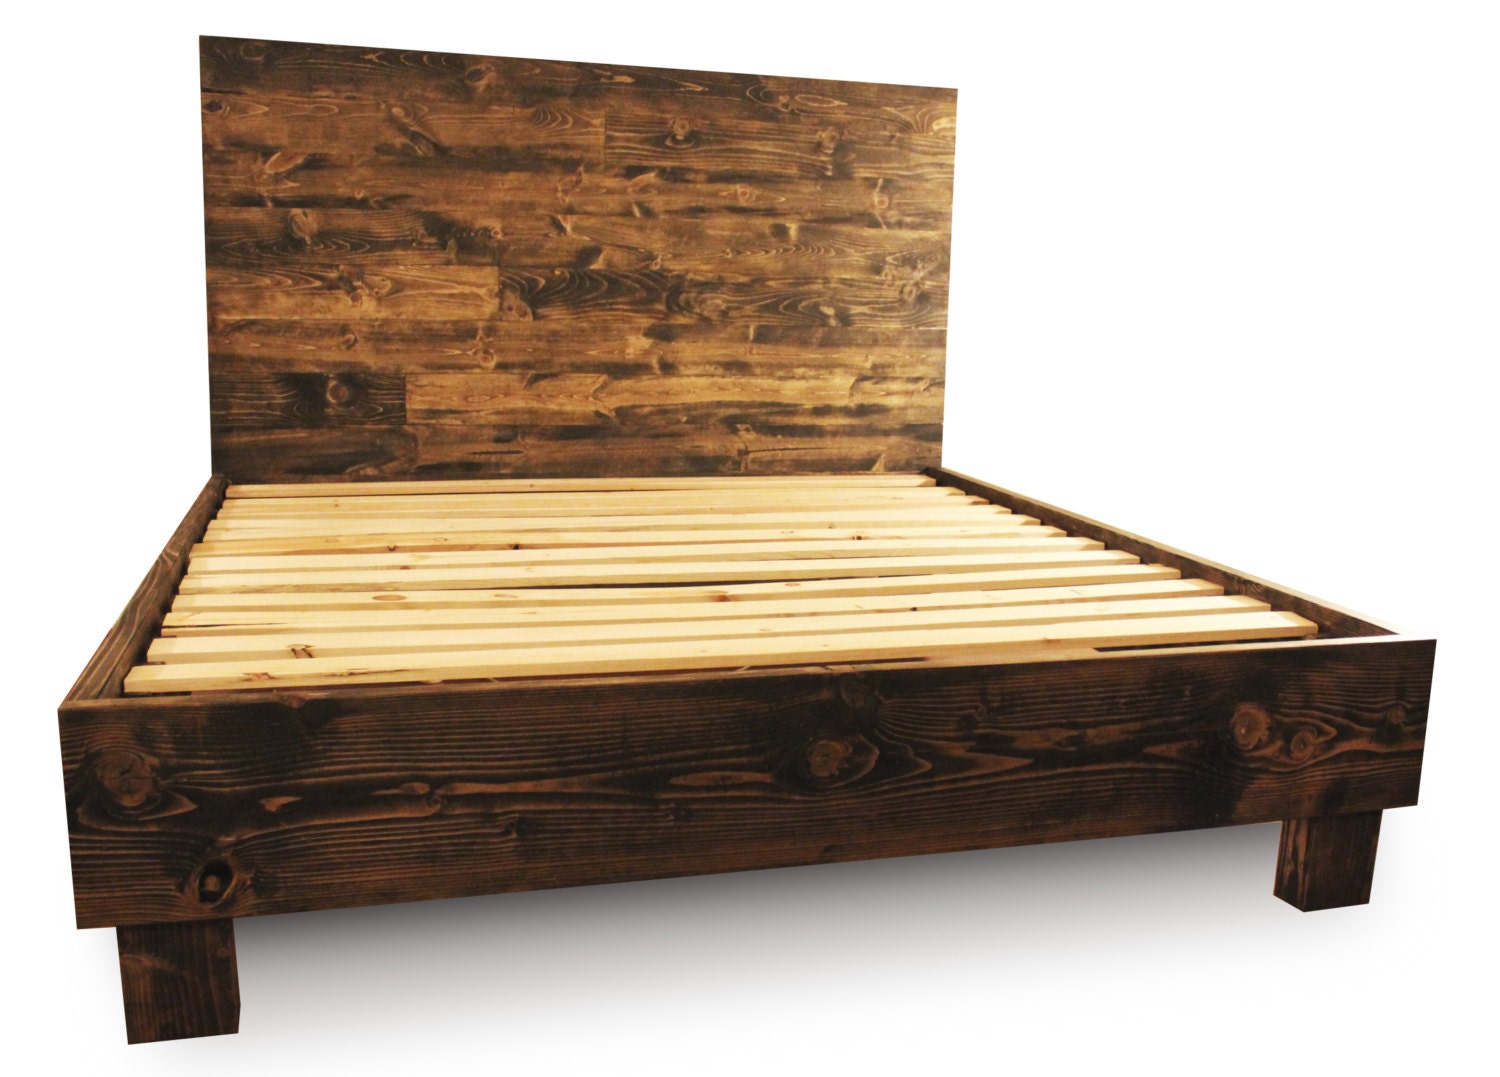 Rustic Wood Platform Bed Frame and Headboard // by PereidaRice